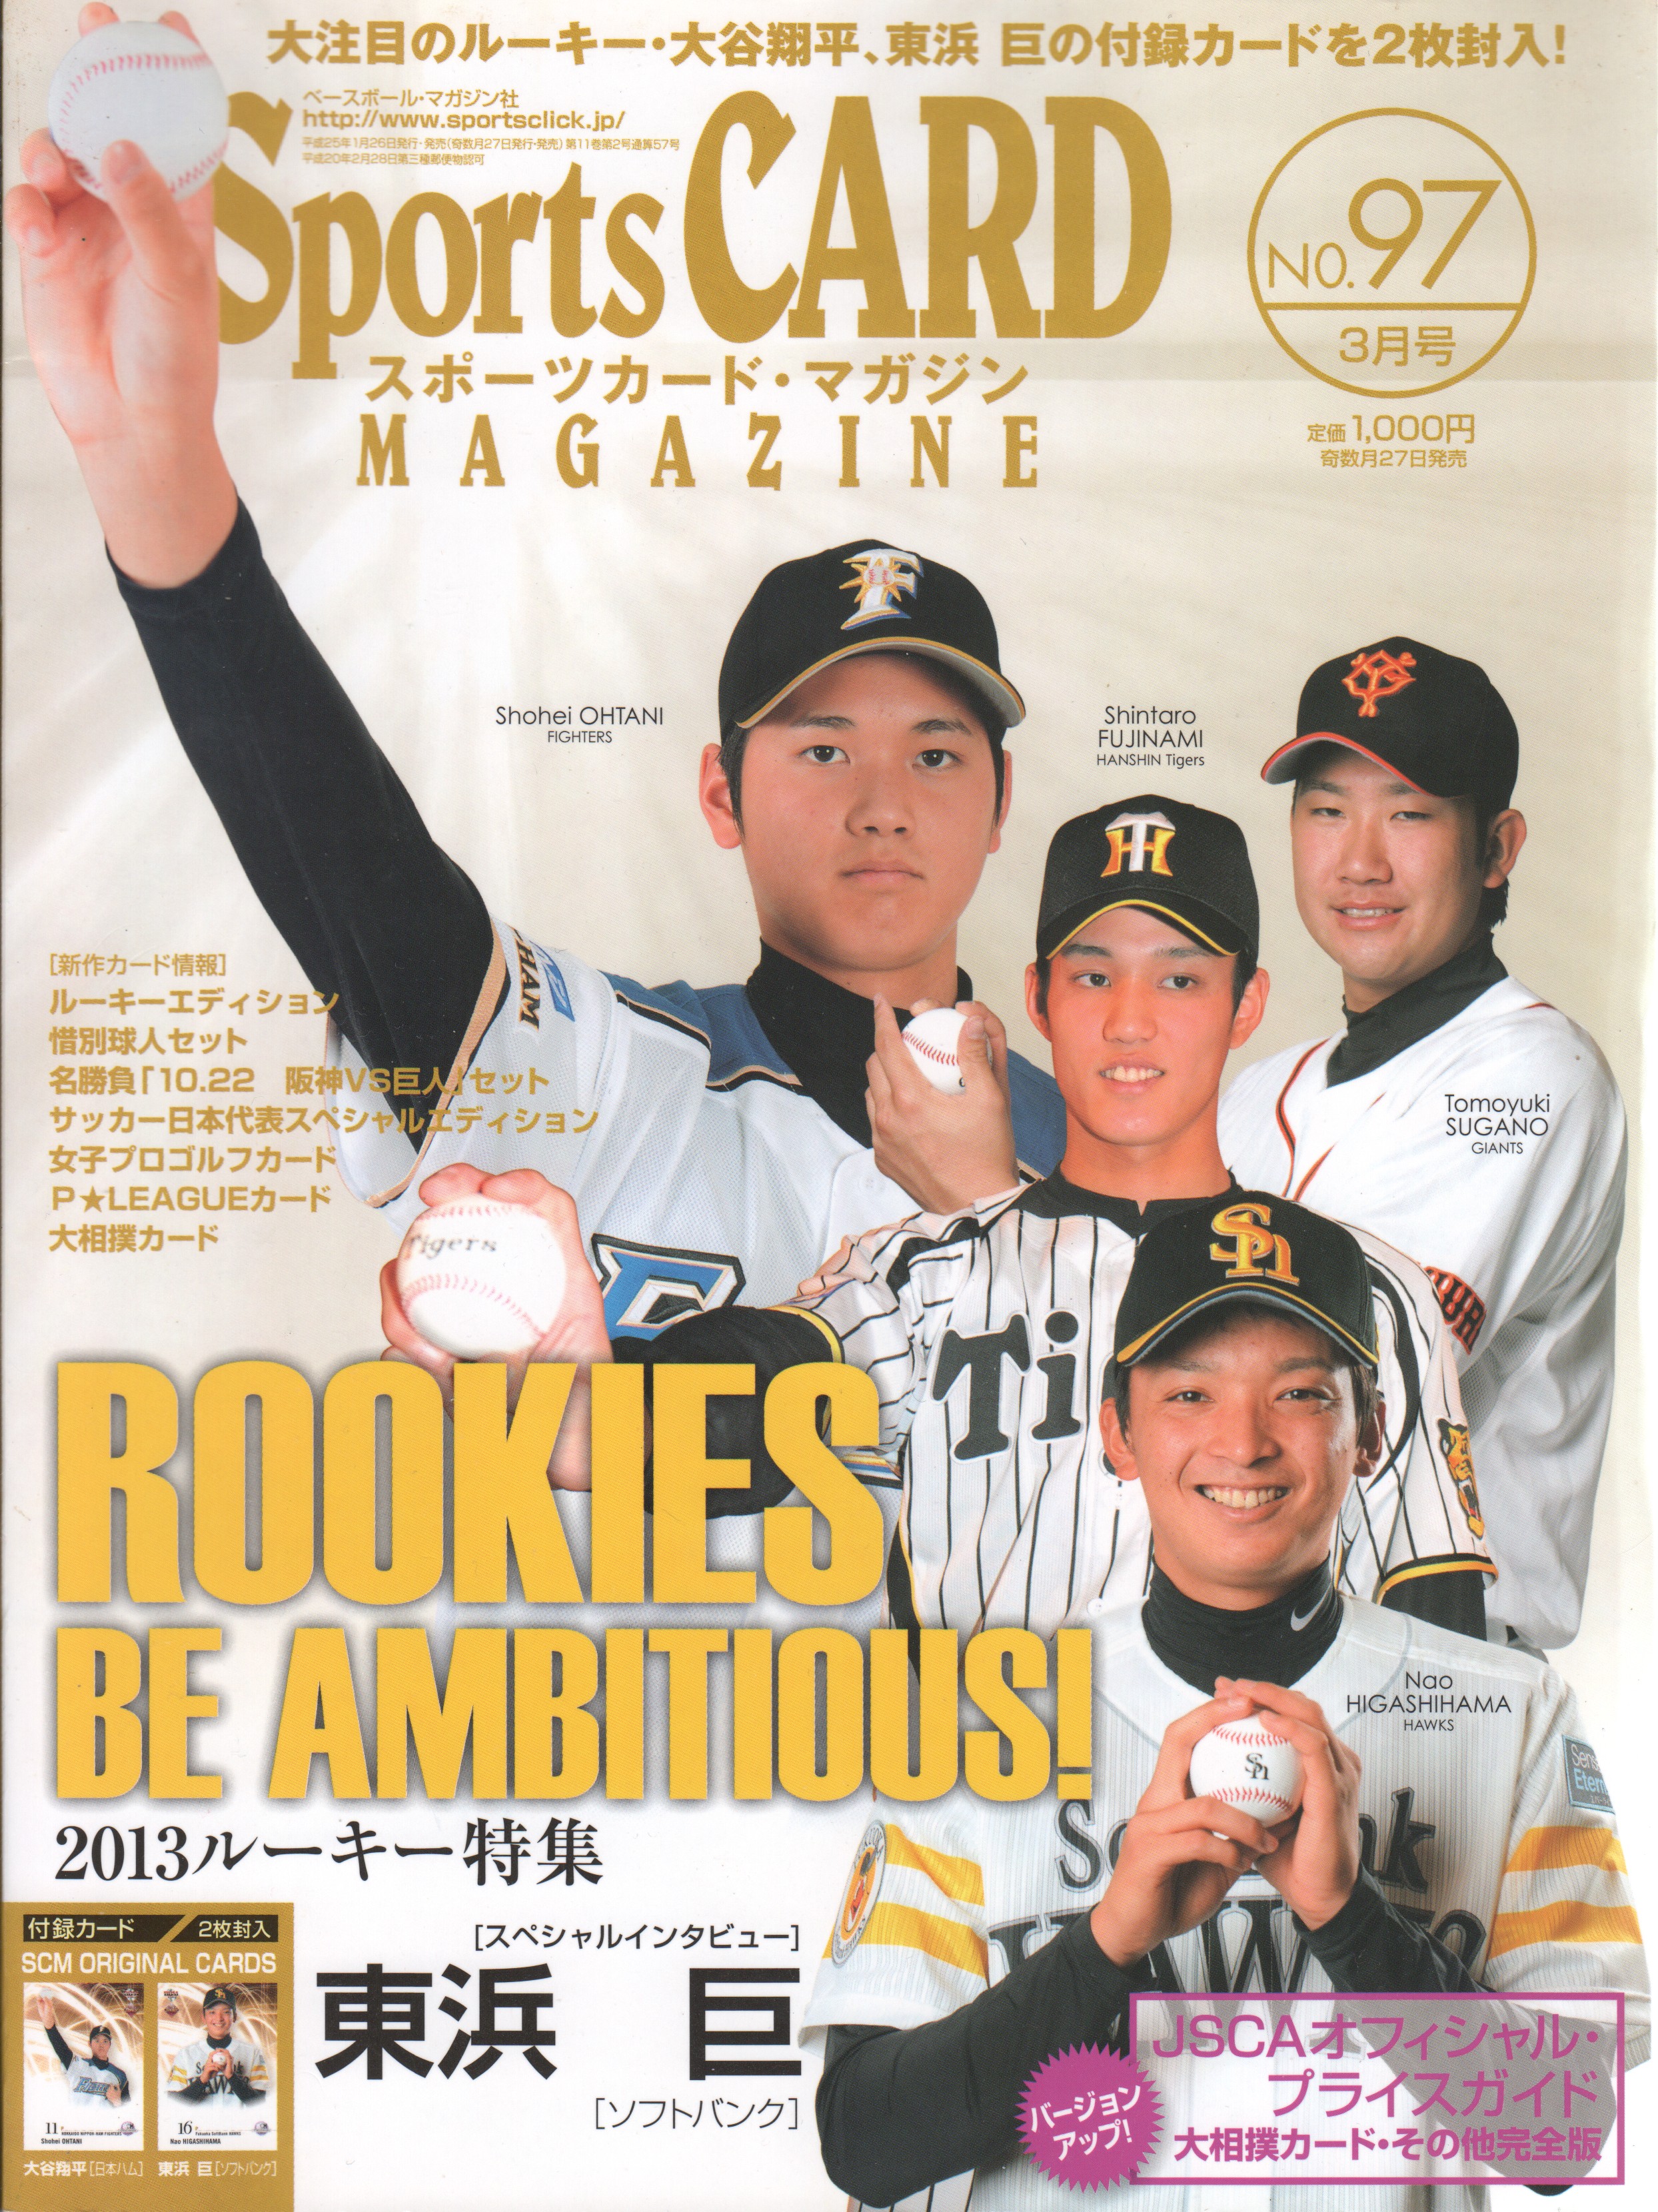 Japanese Baseball Cards: May